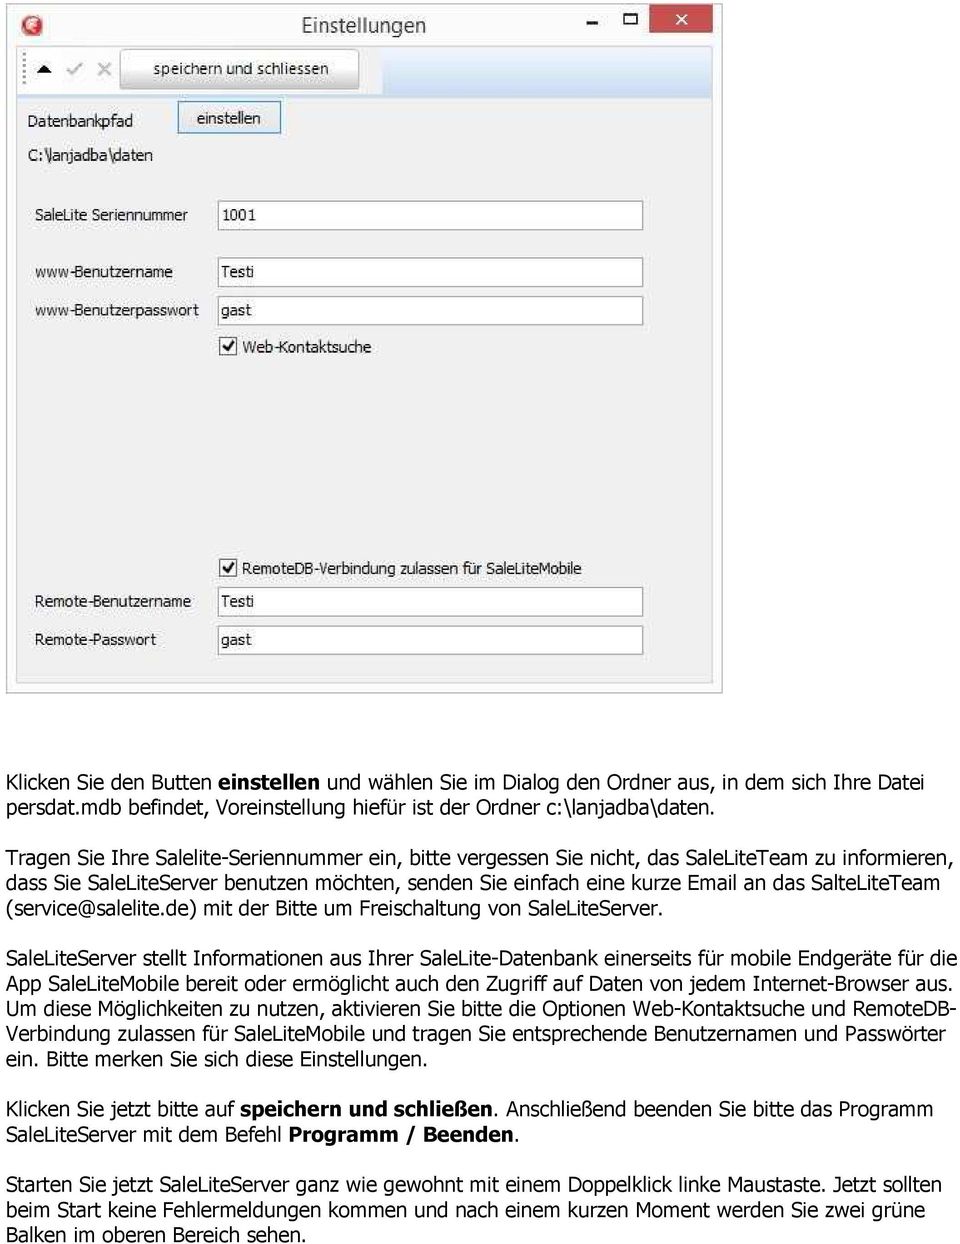 SalteLiteTeam (service@salelite.de) mit der Bitte um Freischaltung von SaleLiteServer.